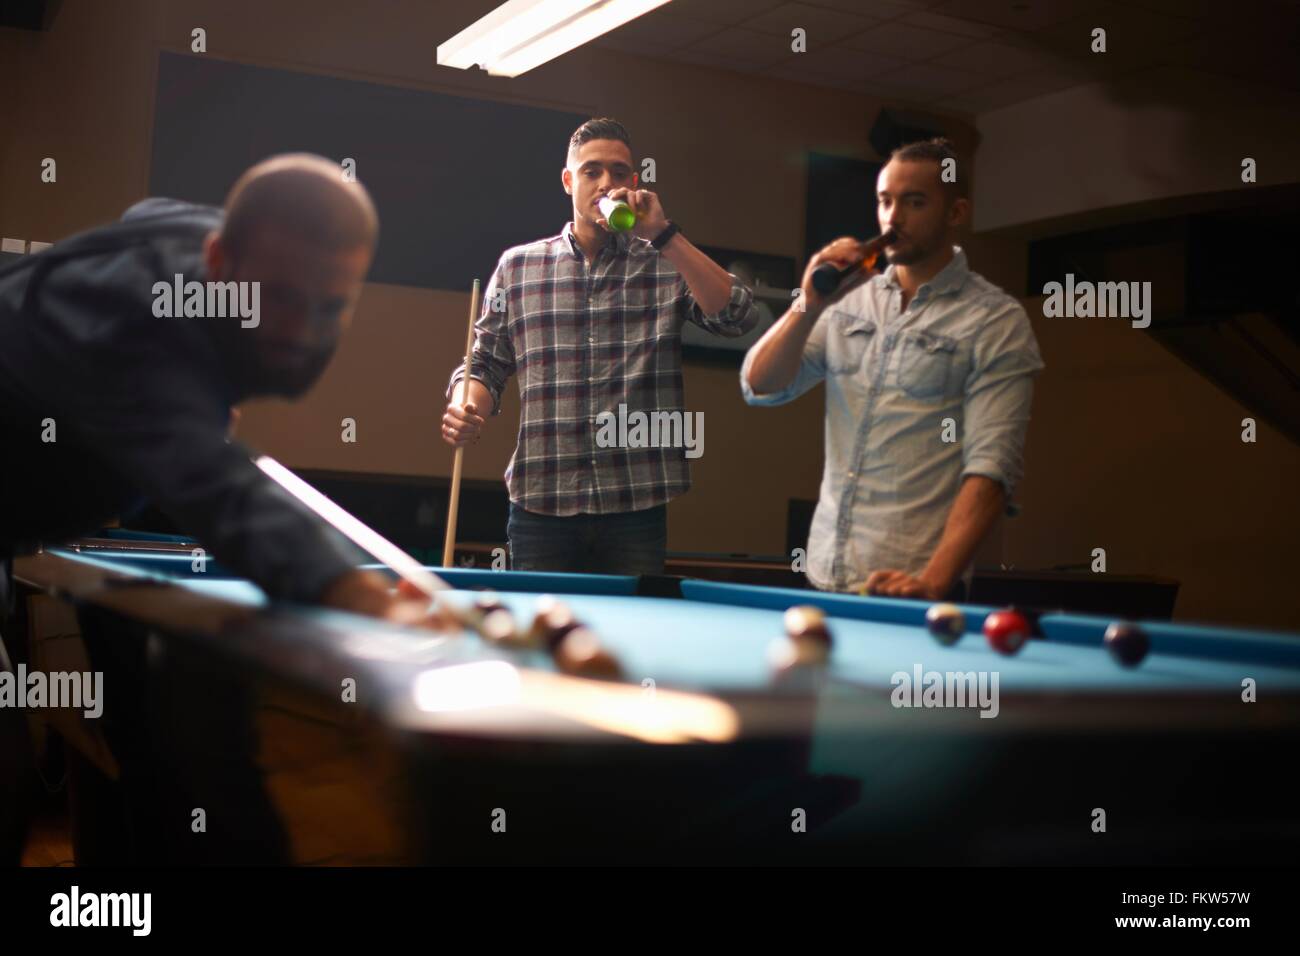 L'homme jouant au billard, les amis de boire une bière en arrière-plan Banque D'Images